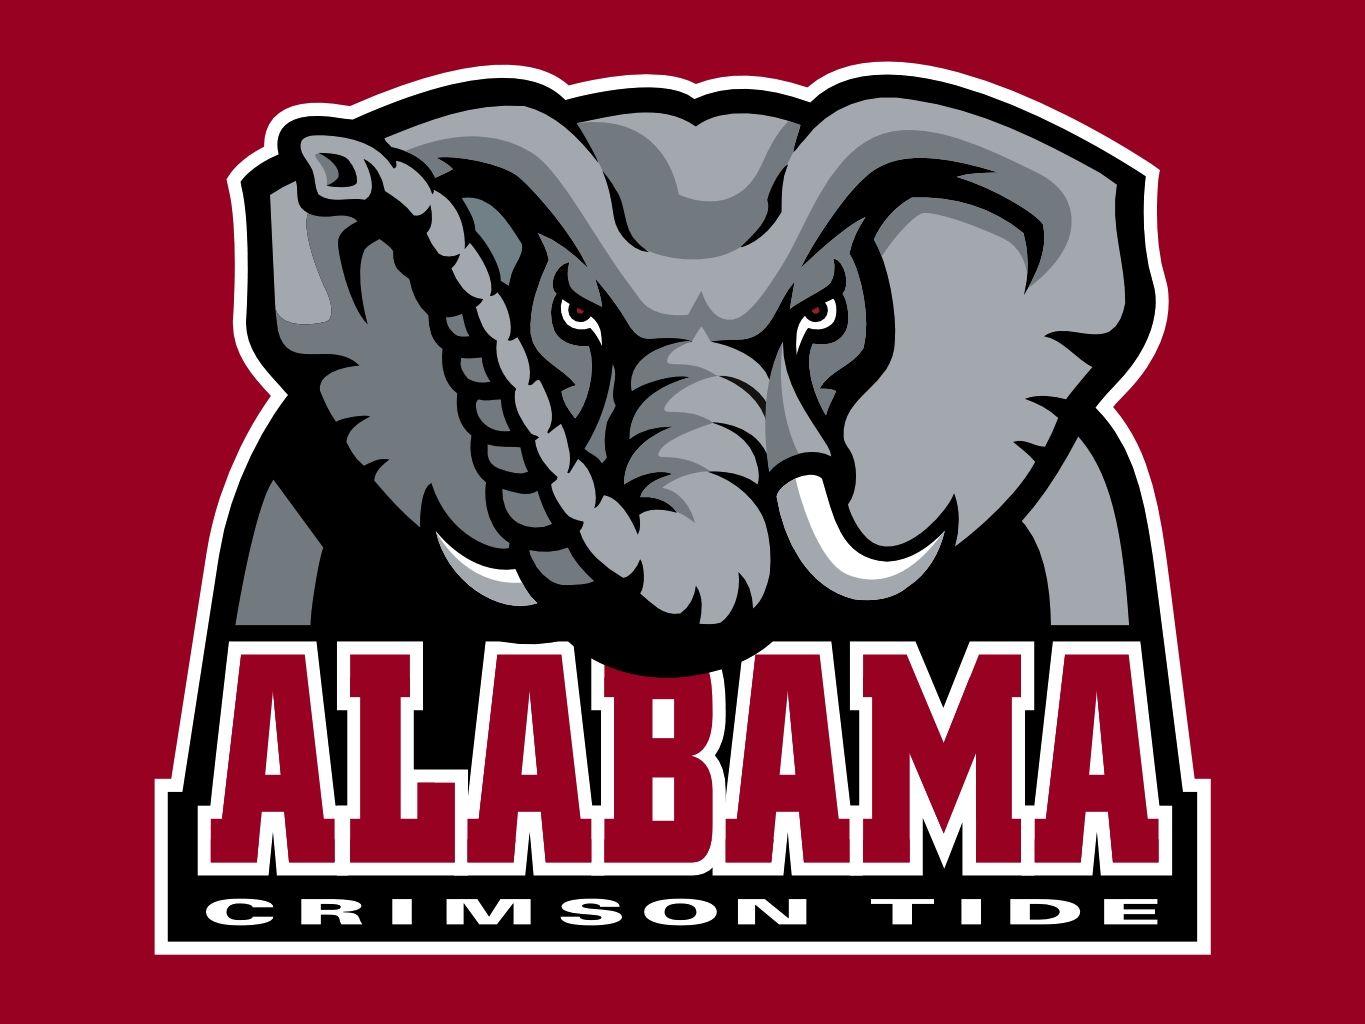 University of Alabama Elephant Logo - Free University Of Alabama Logo, Download Free Clip Art, Free Clip ...